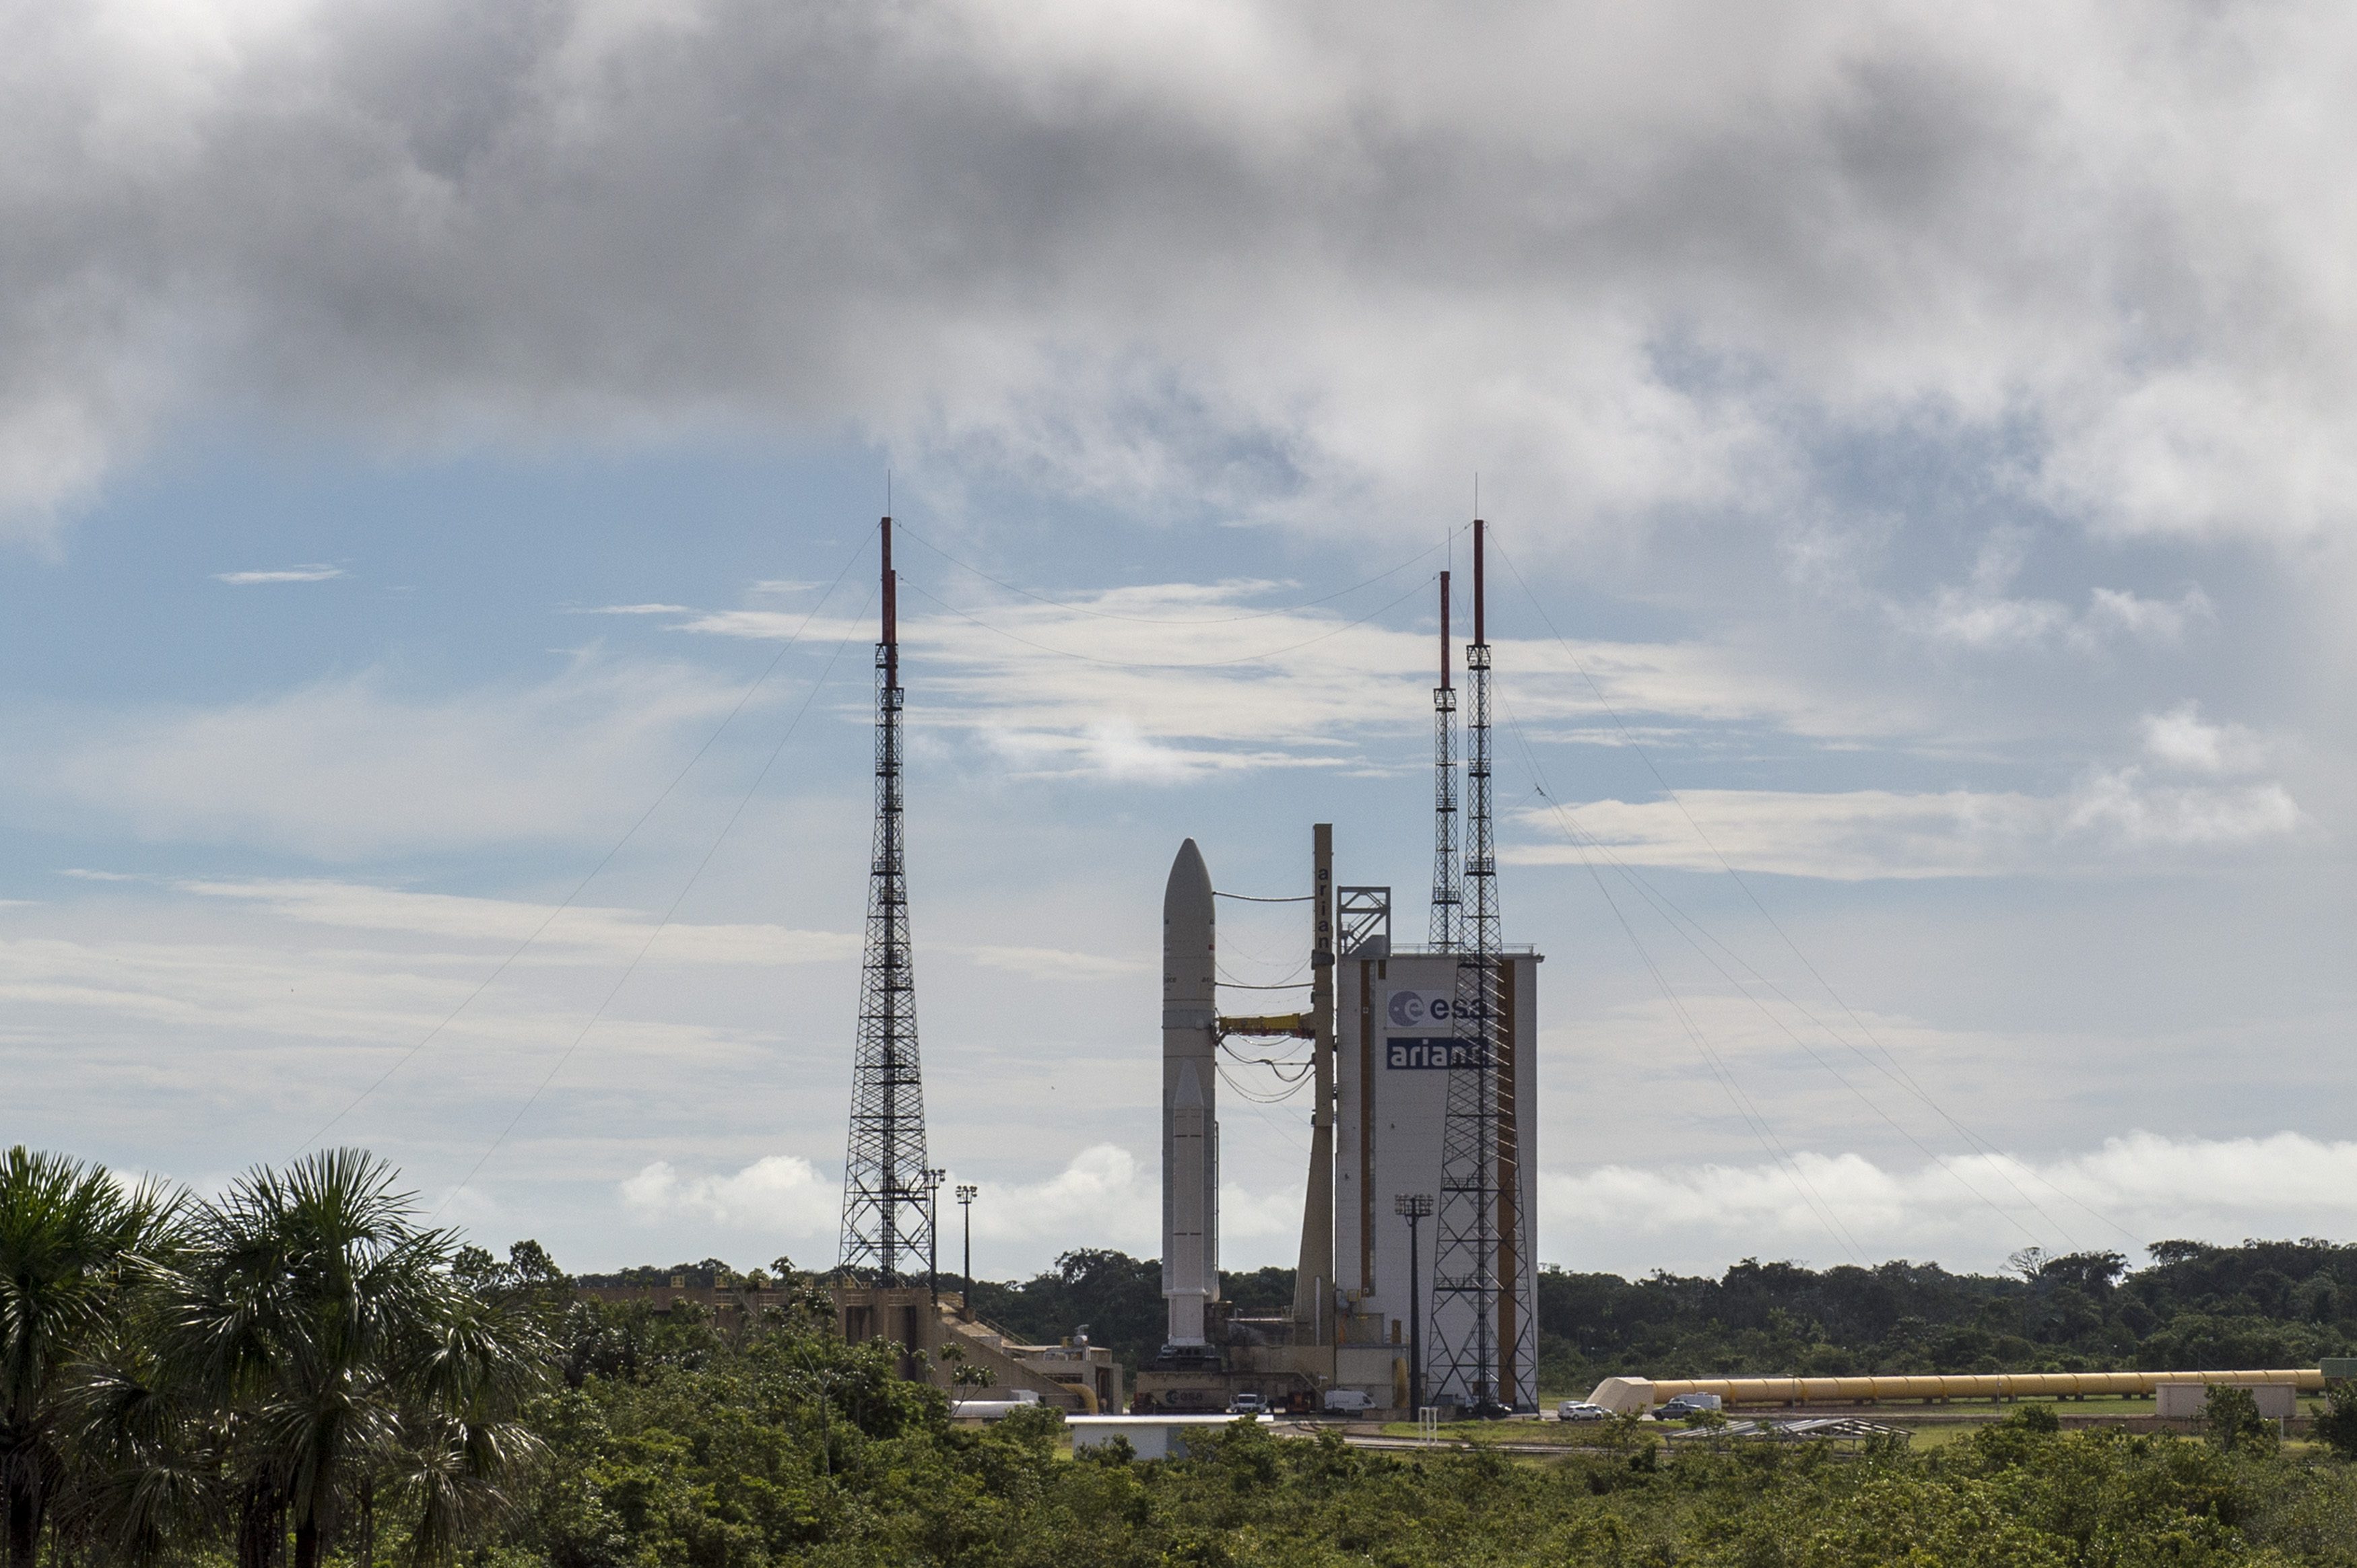 Roket Ariane 5 yang membawa satelit BRIsat menanti waktu hitung mundur di titik peluncuran, fasilitas ruang angkasa Arianespace, Kourou, Guyana Perancis, pada 17 Juni 2016. Foto oleh Ismar Patrizki/Antara 